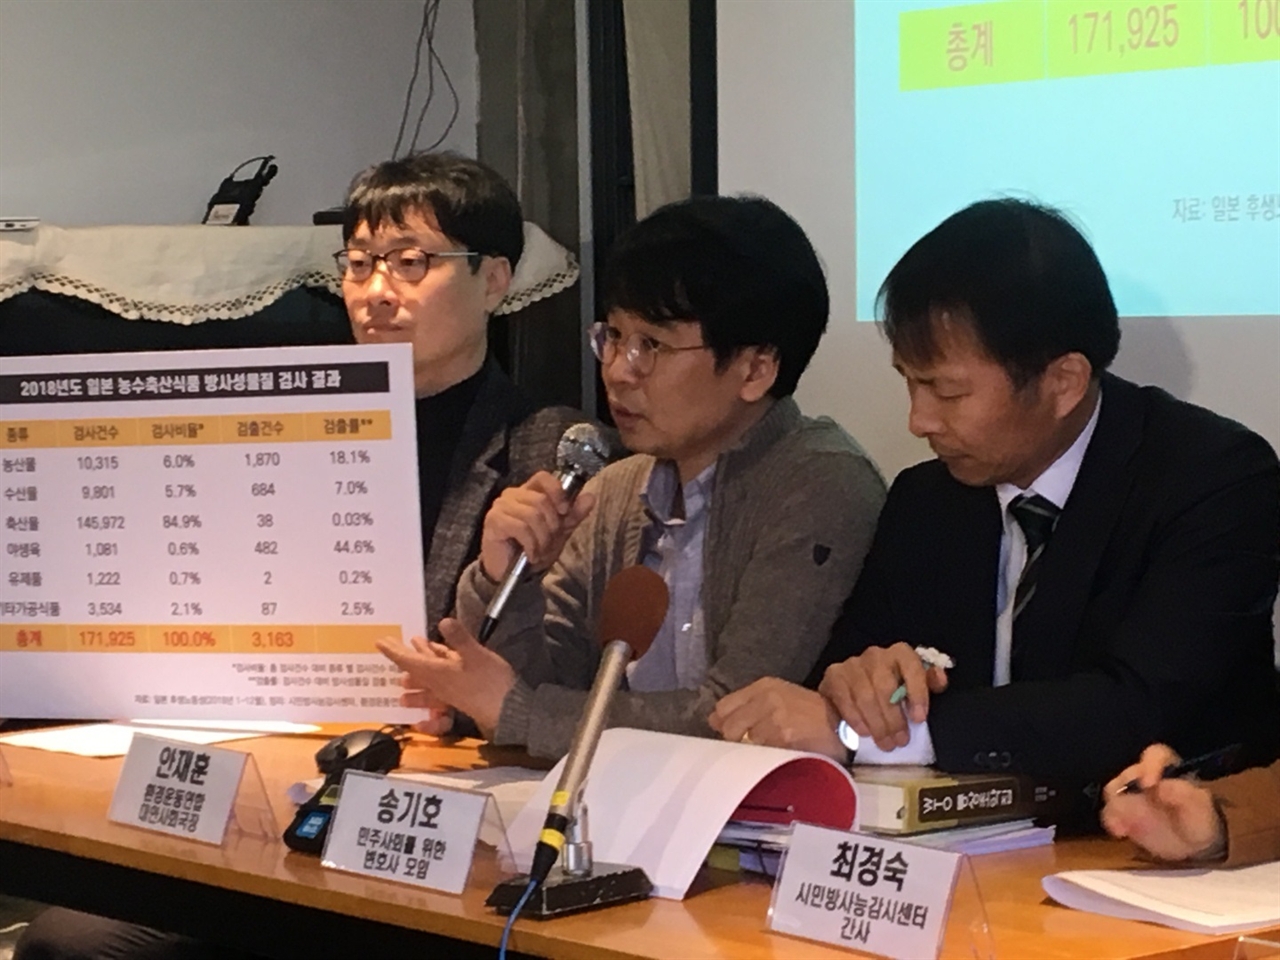 2일, 시민방사능감시센터와 환경연합이 일본 정부가 검사한 '일본산 농수축산물 방사능 오염 실태 분석 결과'를 발표했다.